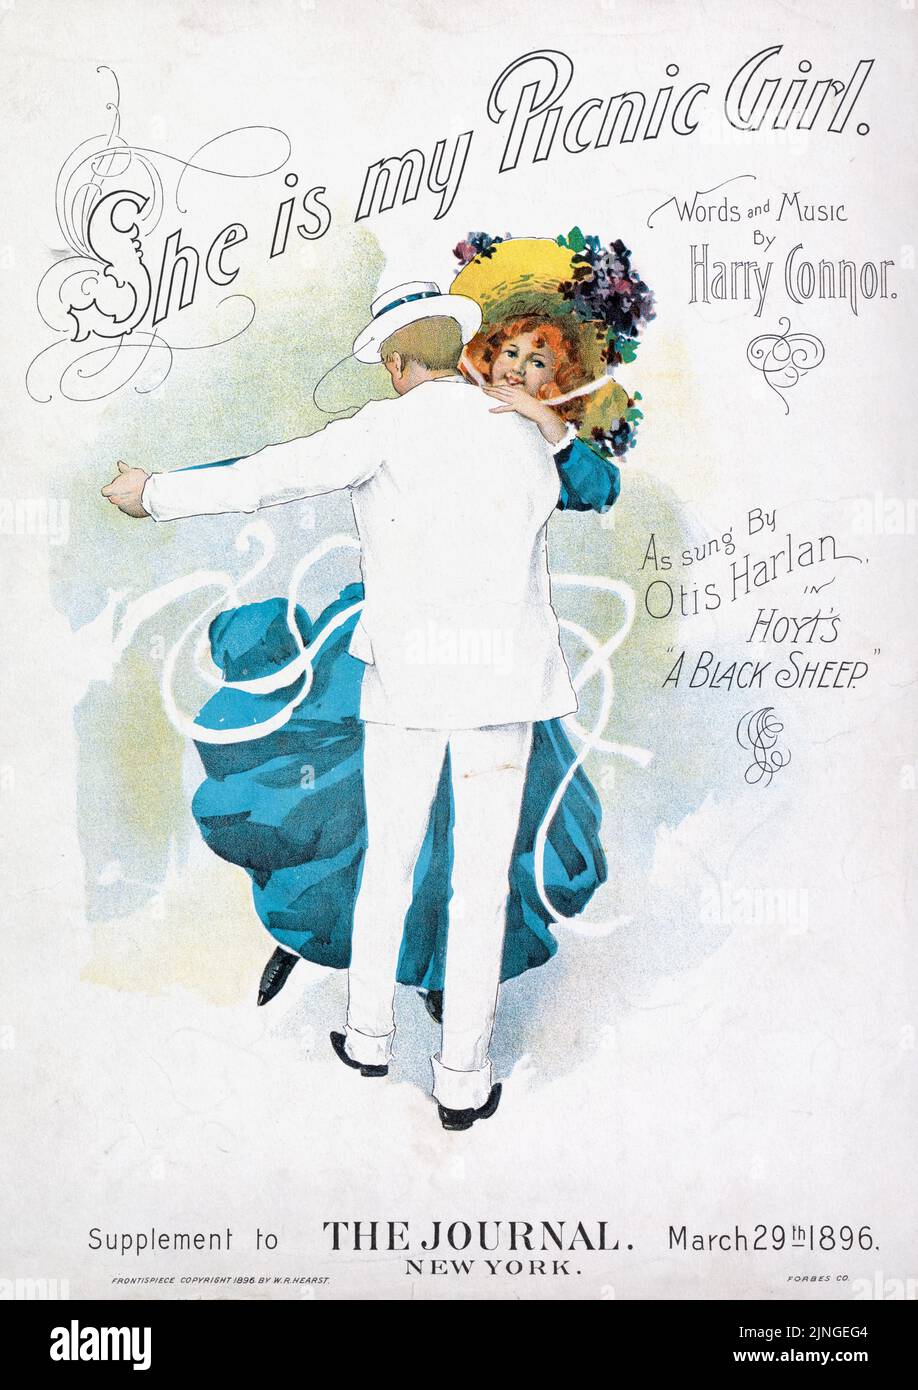 Lei è la mia ragazza pic-nic (1893) parole e musica di Harry Connor, come cantato da Otis Harlan in Hoyt 'Una pecora nera,' supplemento al giornale, New York. Copertina per musica spartiti. Illustrazione di W. R. Hearst Foto Stock